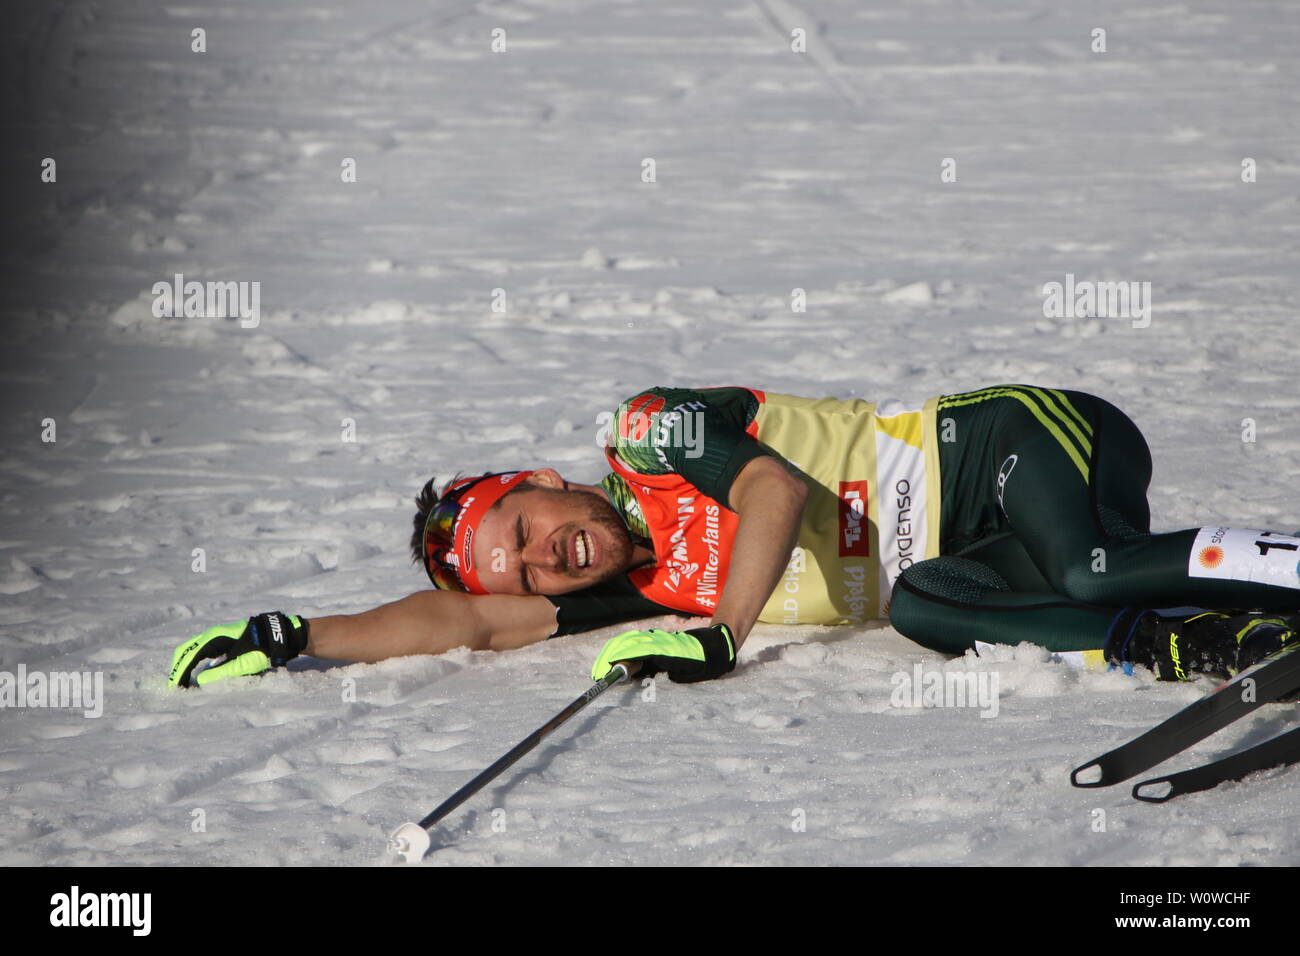 Abgekämpft und kaputt liegt Johannes Rydzek (Oberstdorf)  auf dem Schnee im Zielraum nach dem Einzel Nordische Kombination, FIS Nordische Ski-WM 2019 in Seefeld Stock Photo